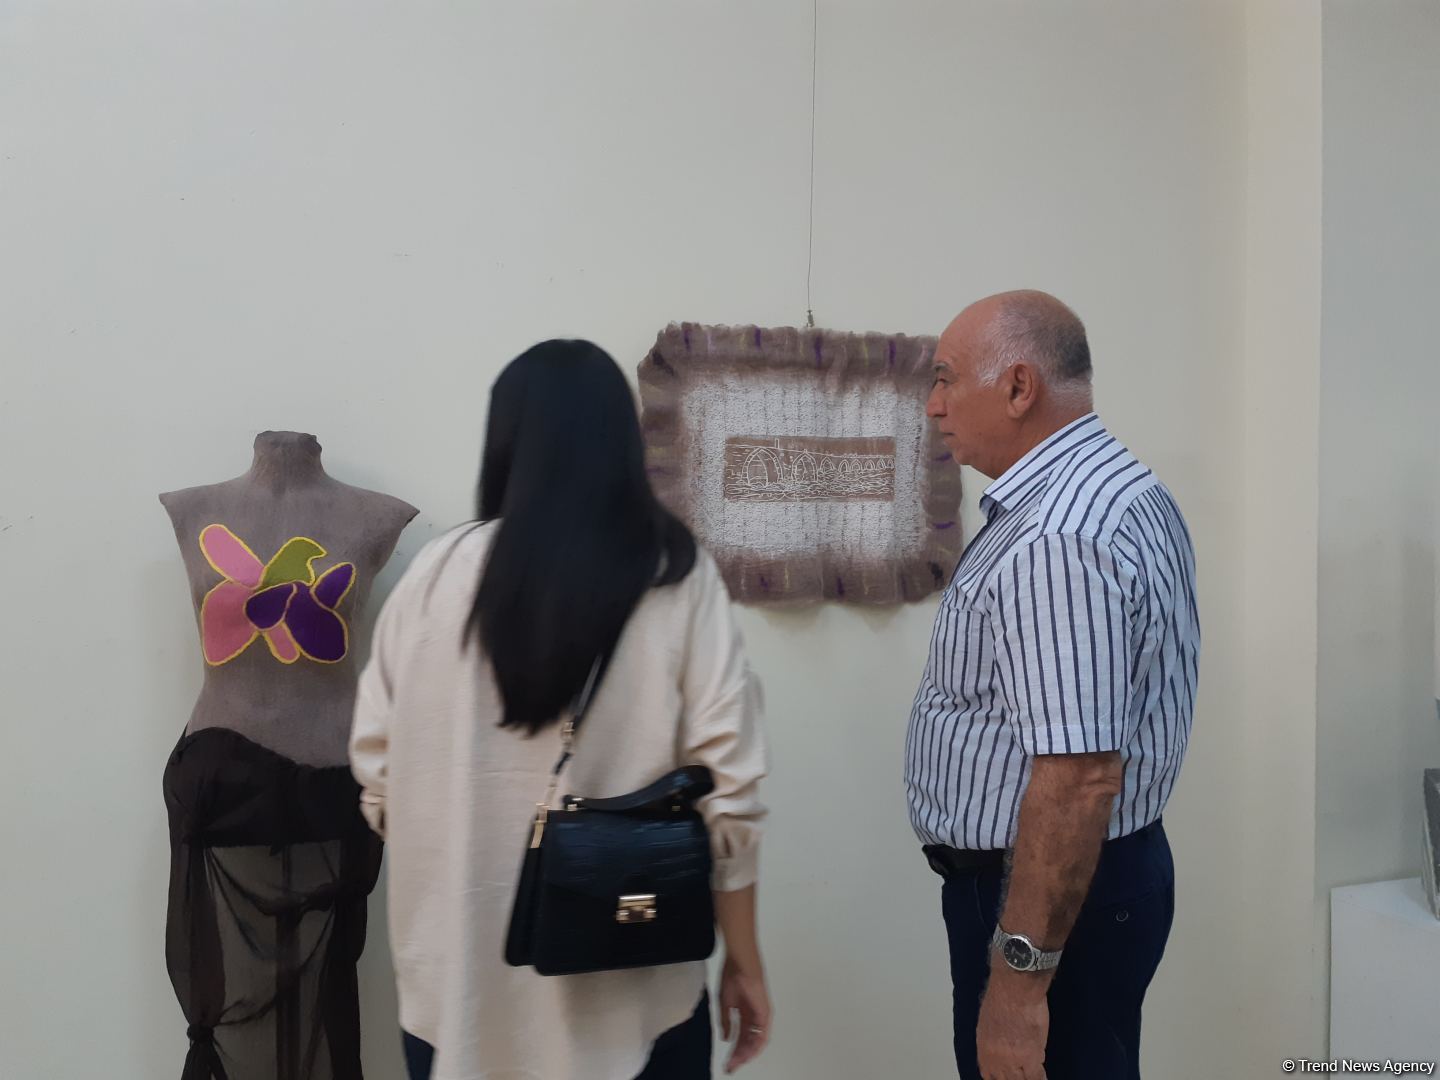 Необычные работы азербайджанской художницы: синтез моды, войлока и линогравюры  (ФОТО)